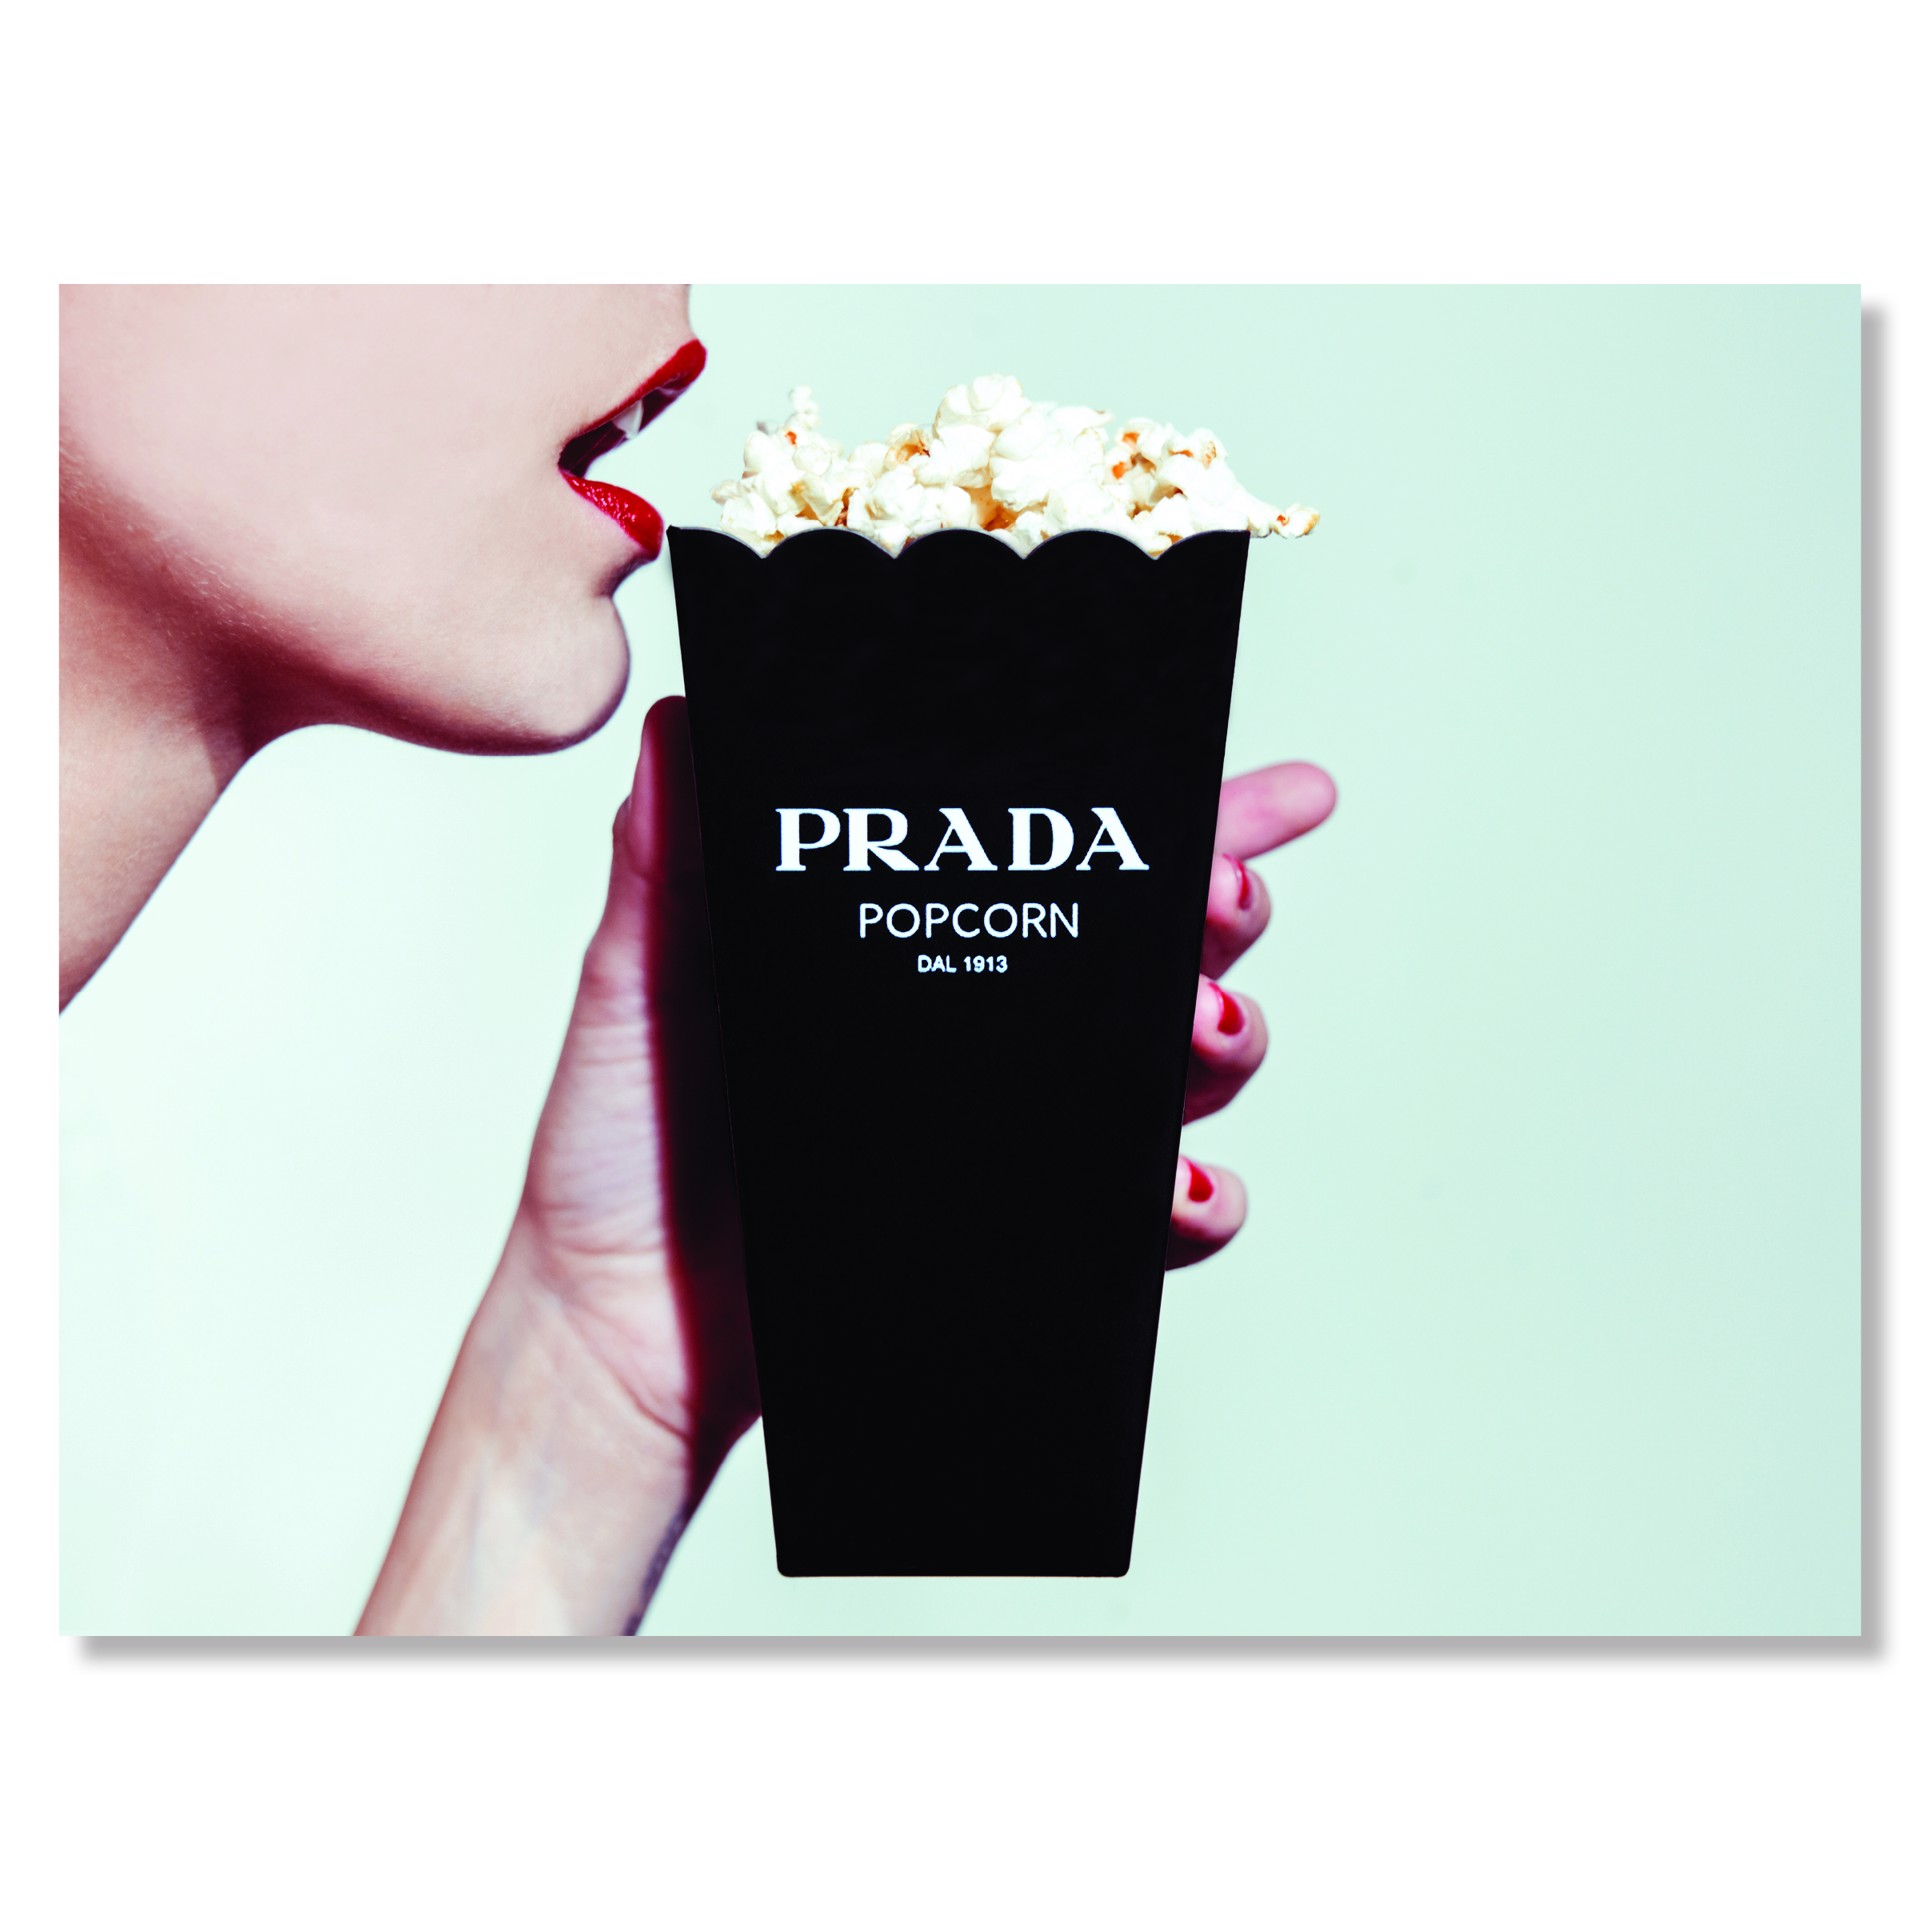 Prada Popcorn by Tyler Shields